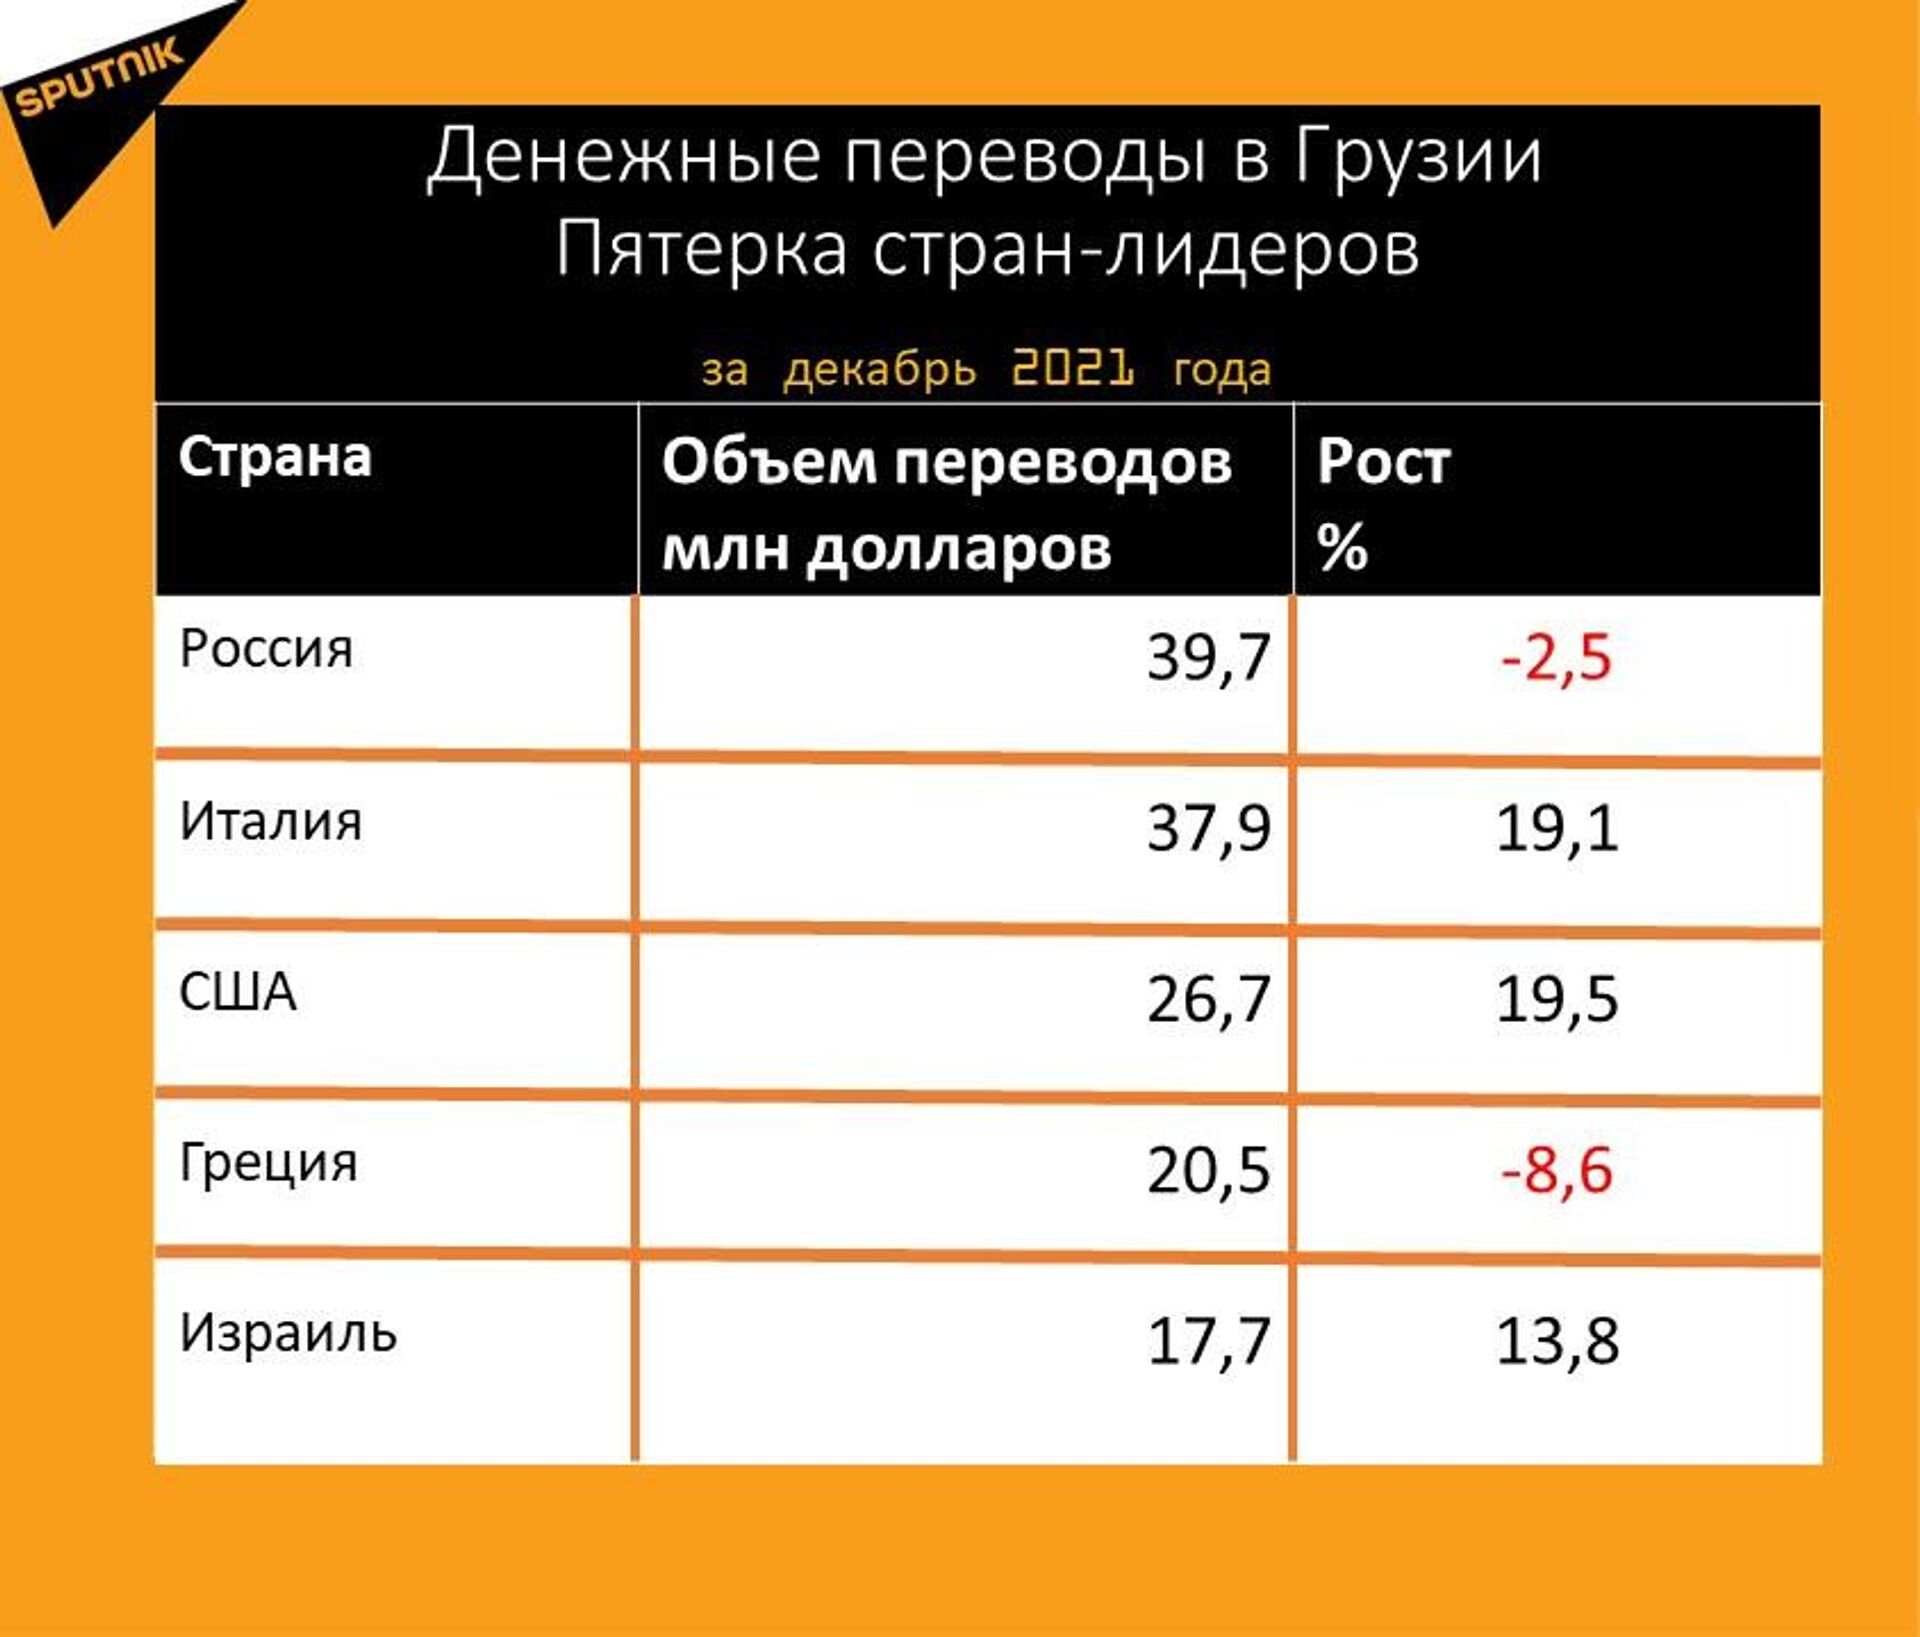 Статистика денежных переводов в Грузию за декабрь 2021 года - Sputnik Грузия, 1920, 18.01.2022